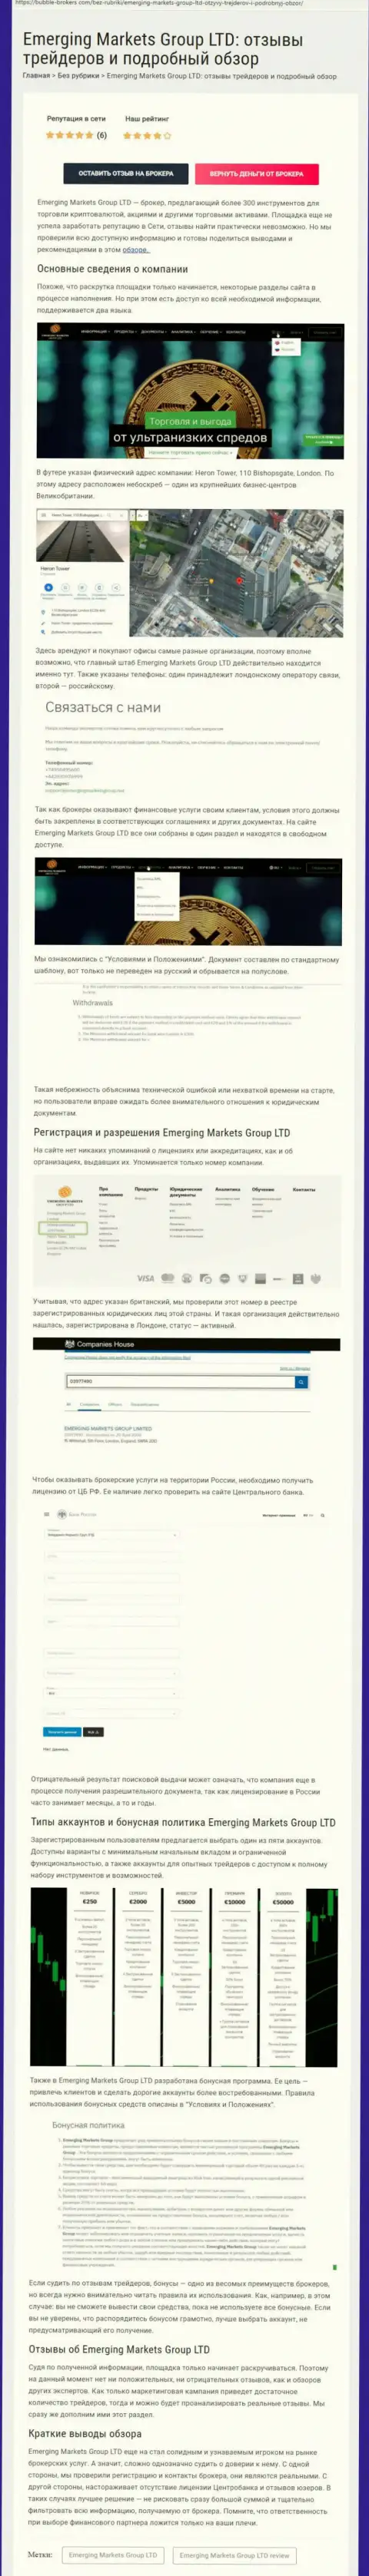 Информационный портал Бубле-Брокерс Ком разместил обзор дилинговой организации EmergingMarkets Group